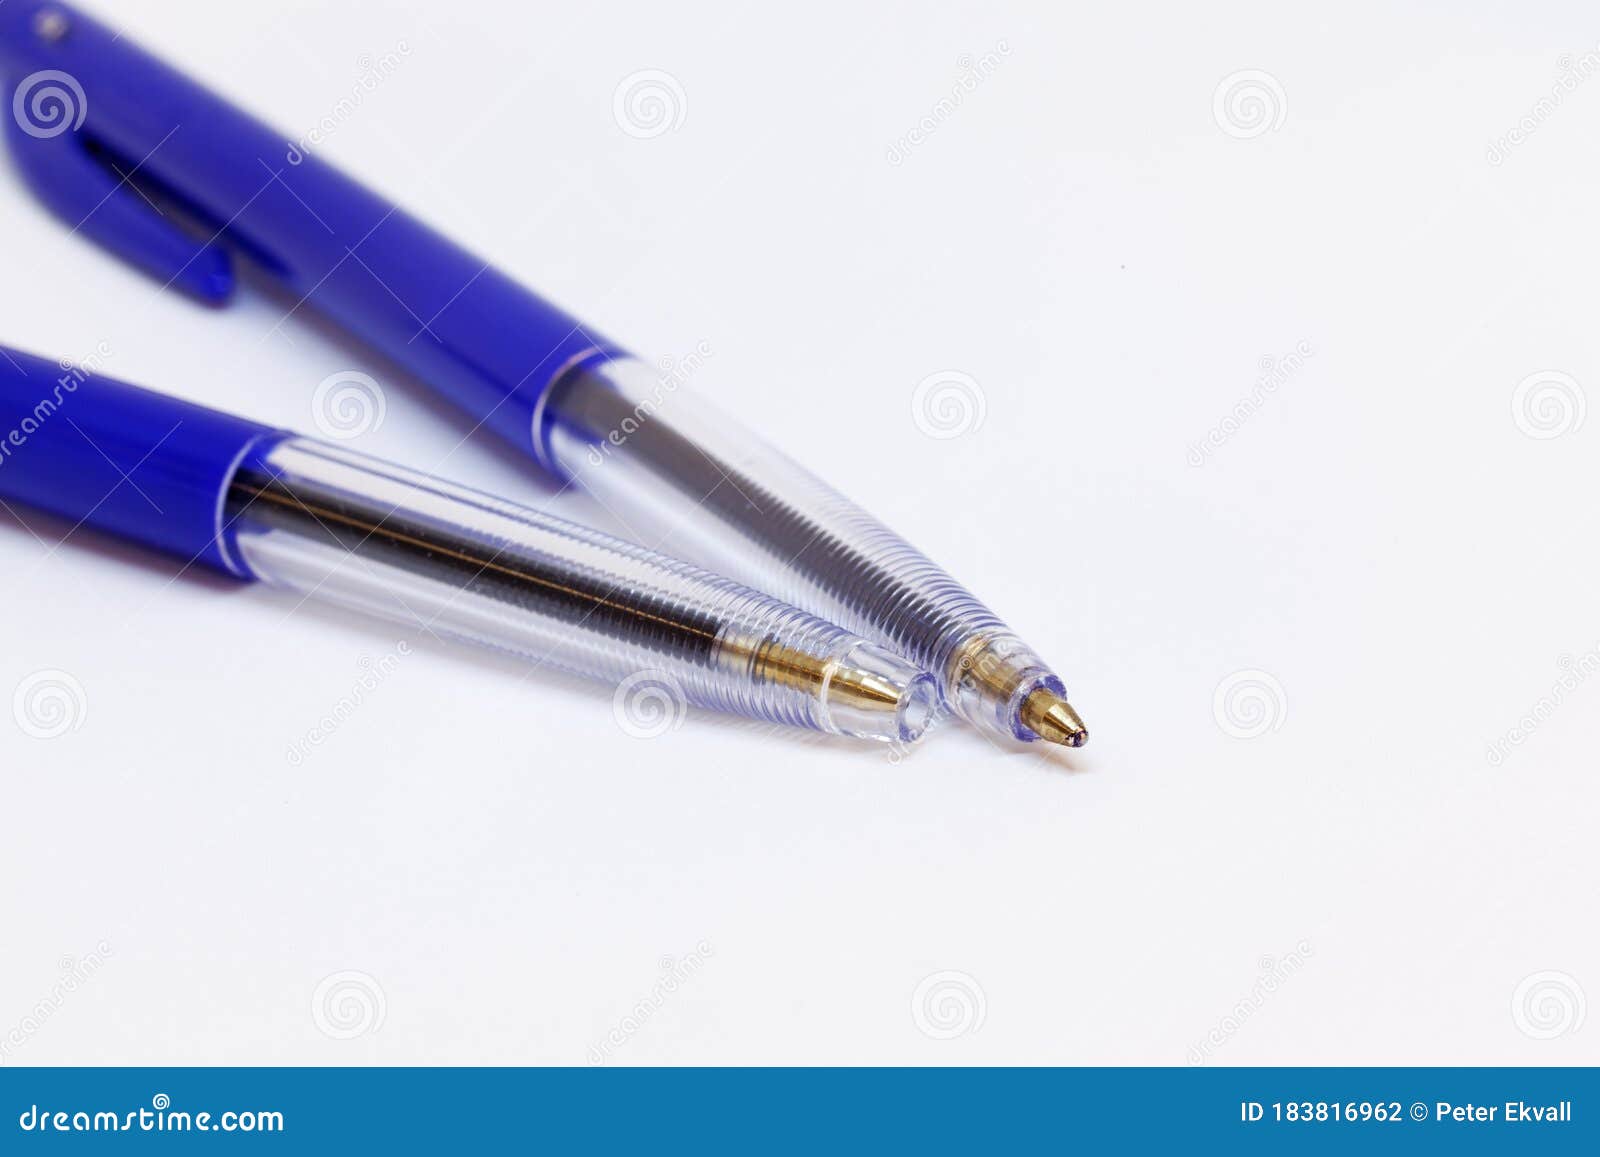 Blue pens. White 2pens. Почему ручка с синими чернилами лучше чем а красными.